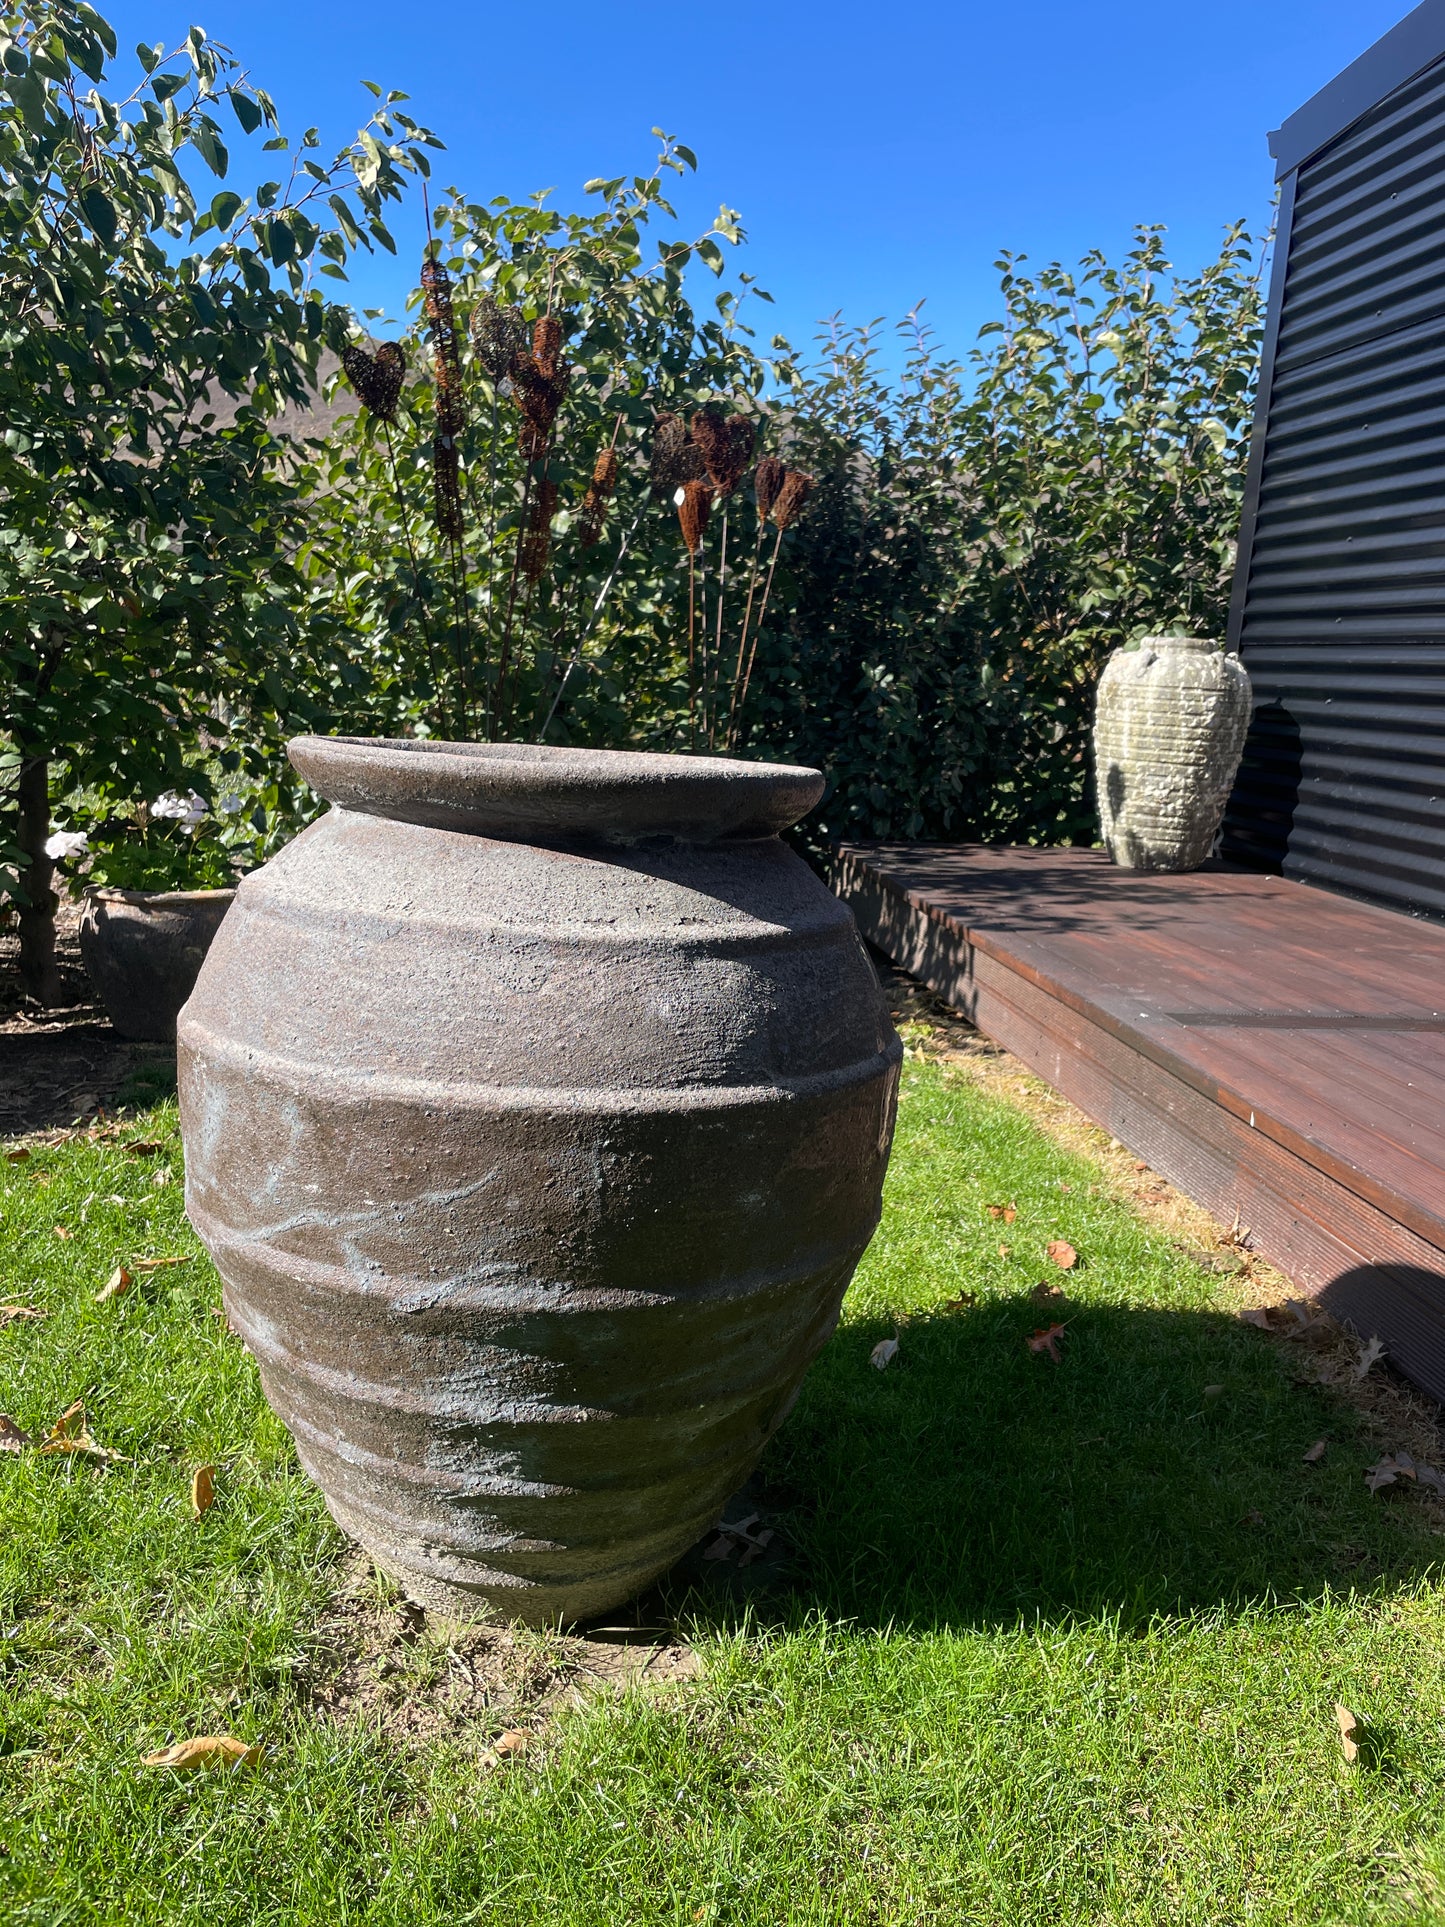 Beehive pot - outdoor